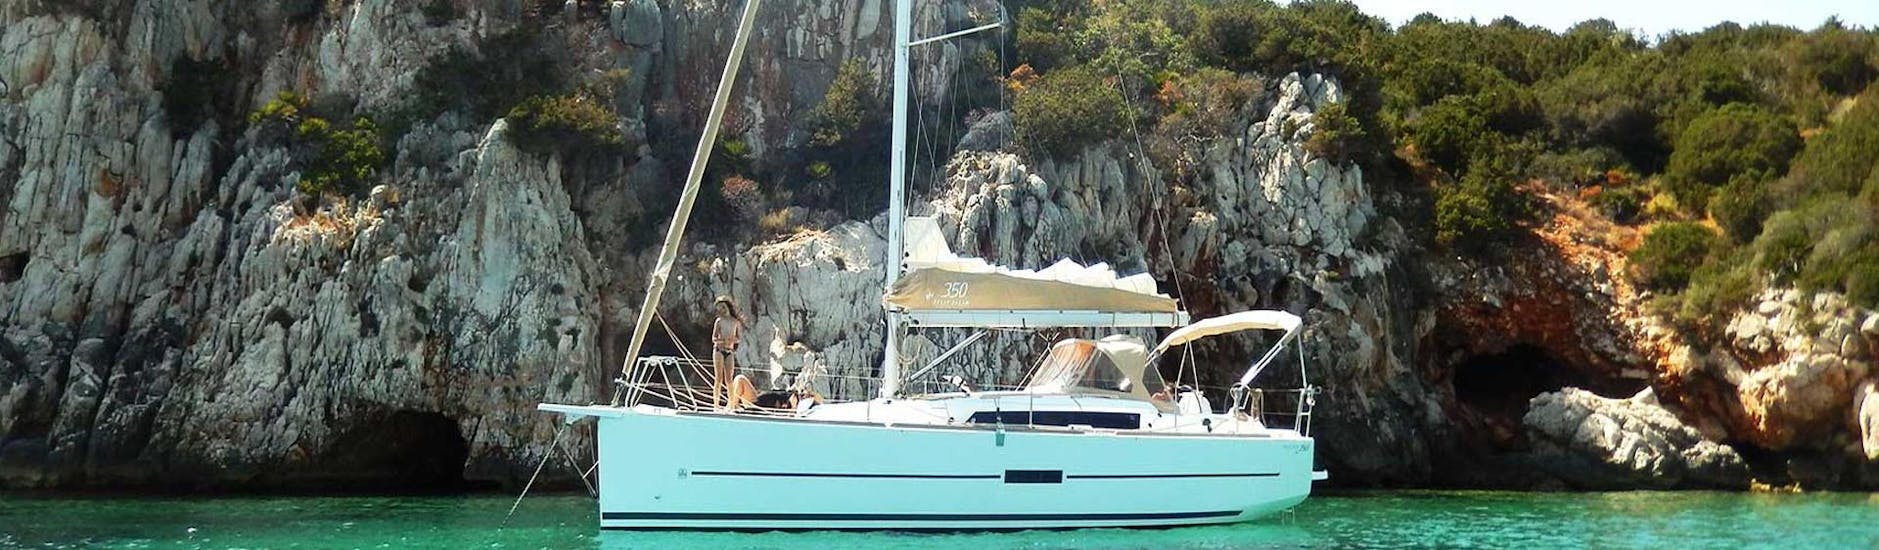 La barca a vela utilizzata durante le gite di Cruise Sail Charter Alghero.